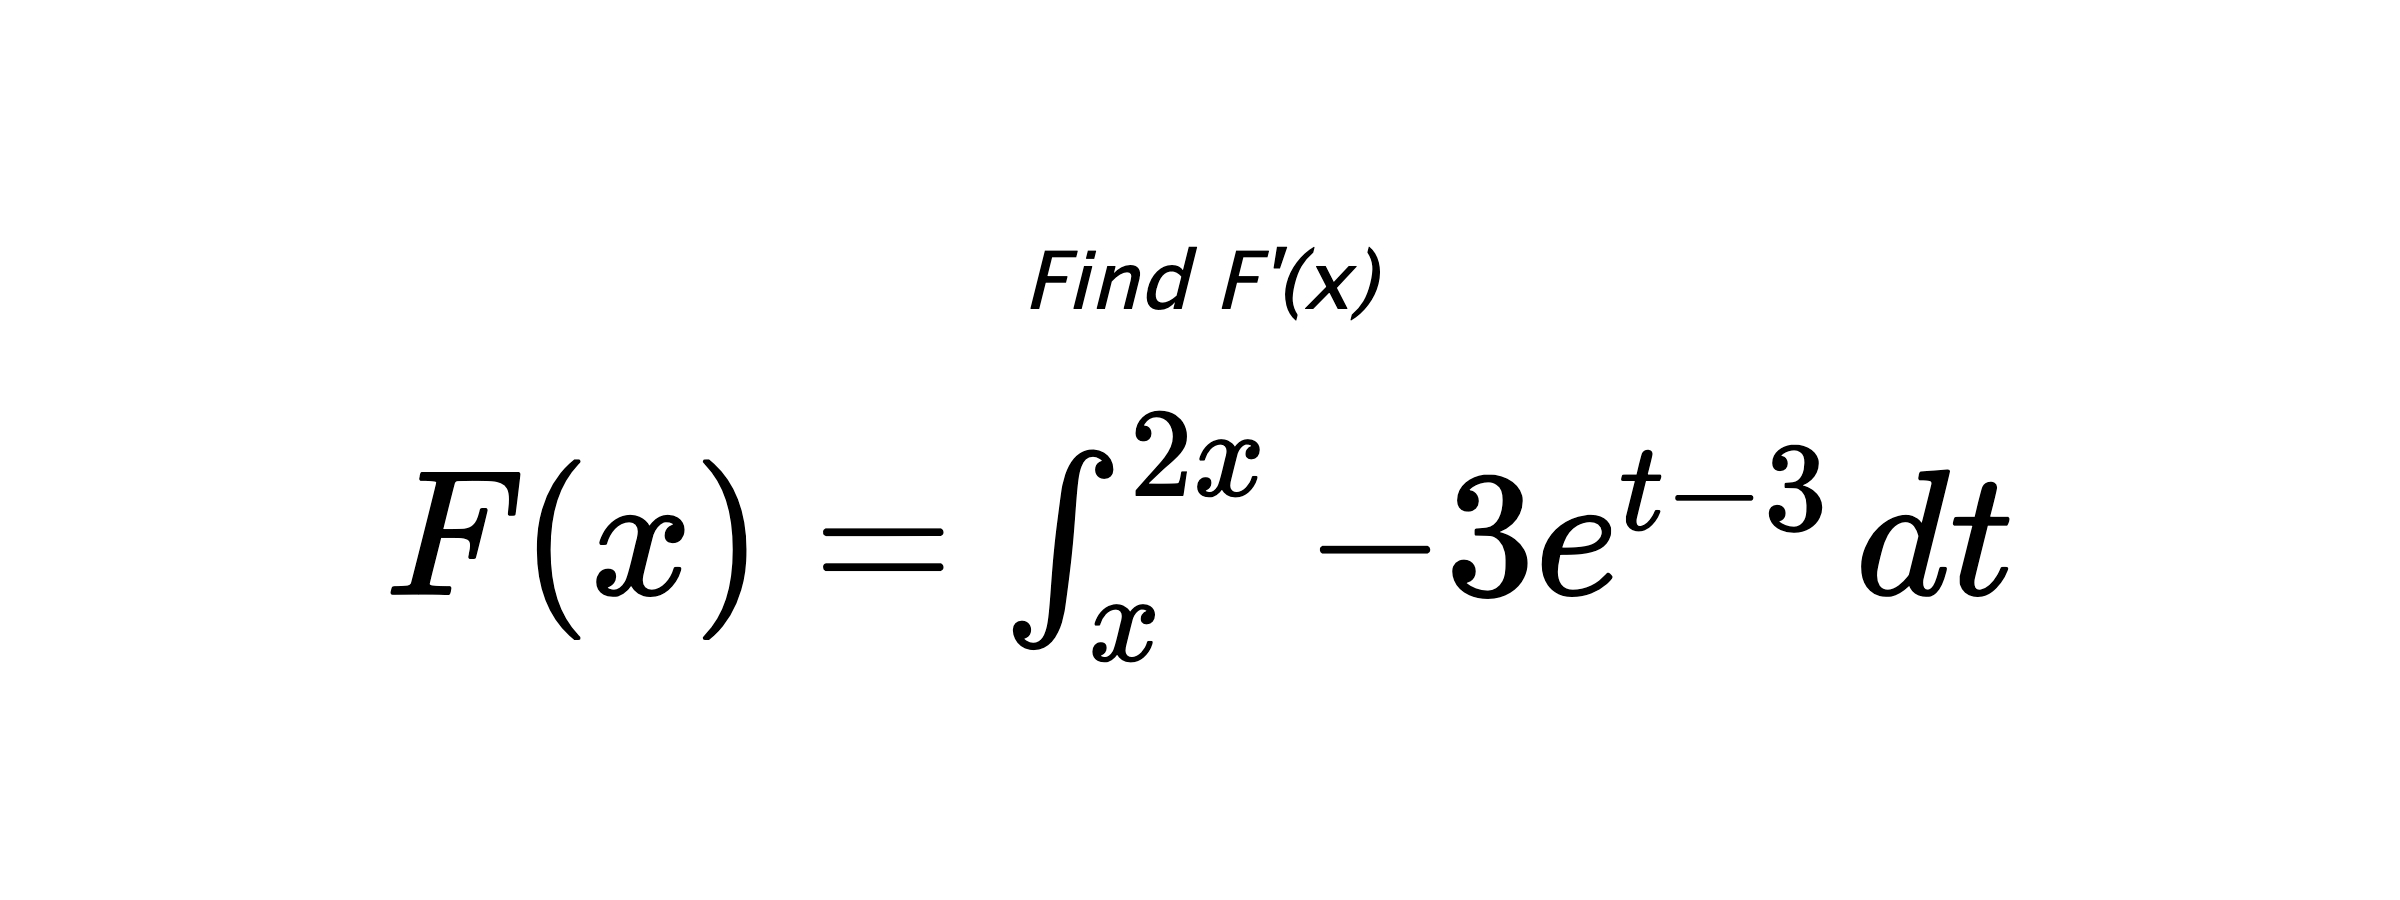 Find F'(x) $ F(x)=\int_{x}^{2x} -3e^{t-3} \hspace{0.2cm} dt $